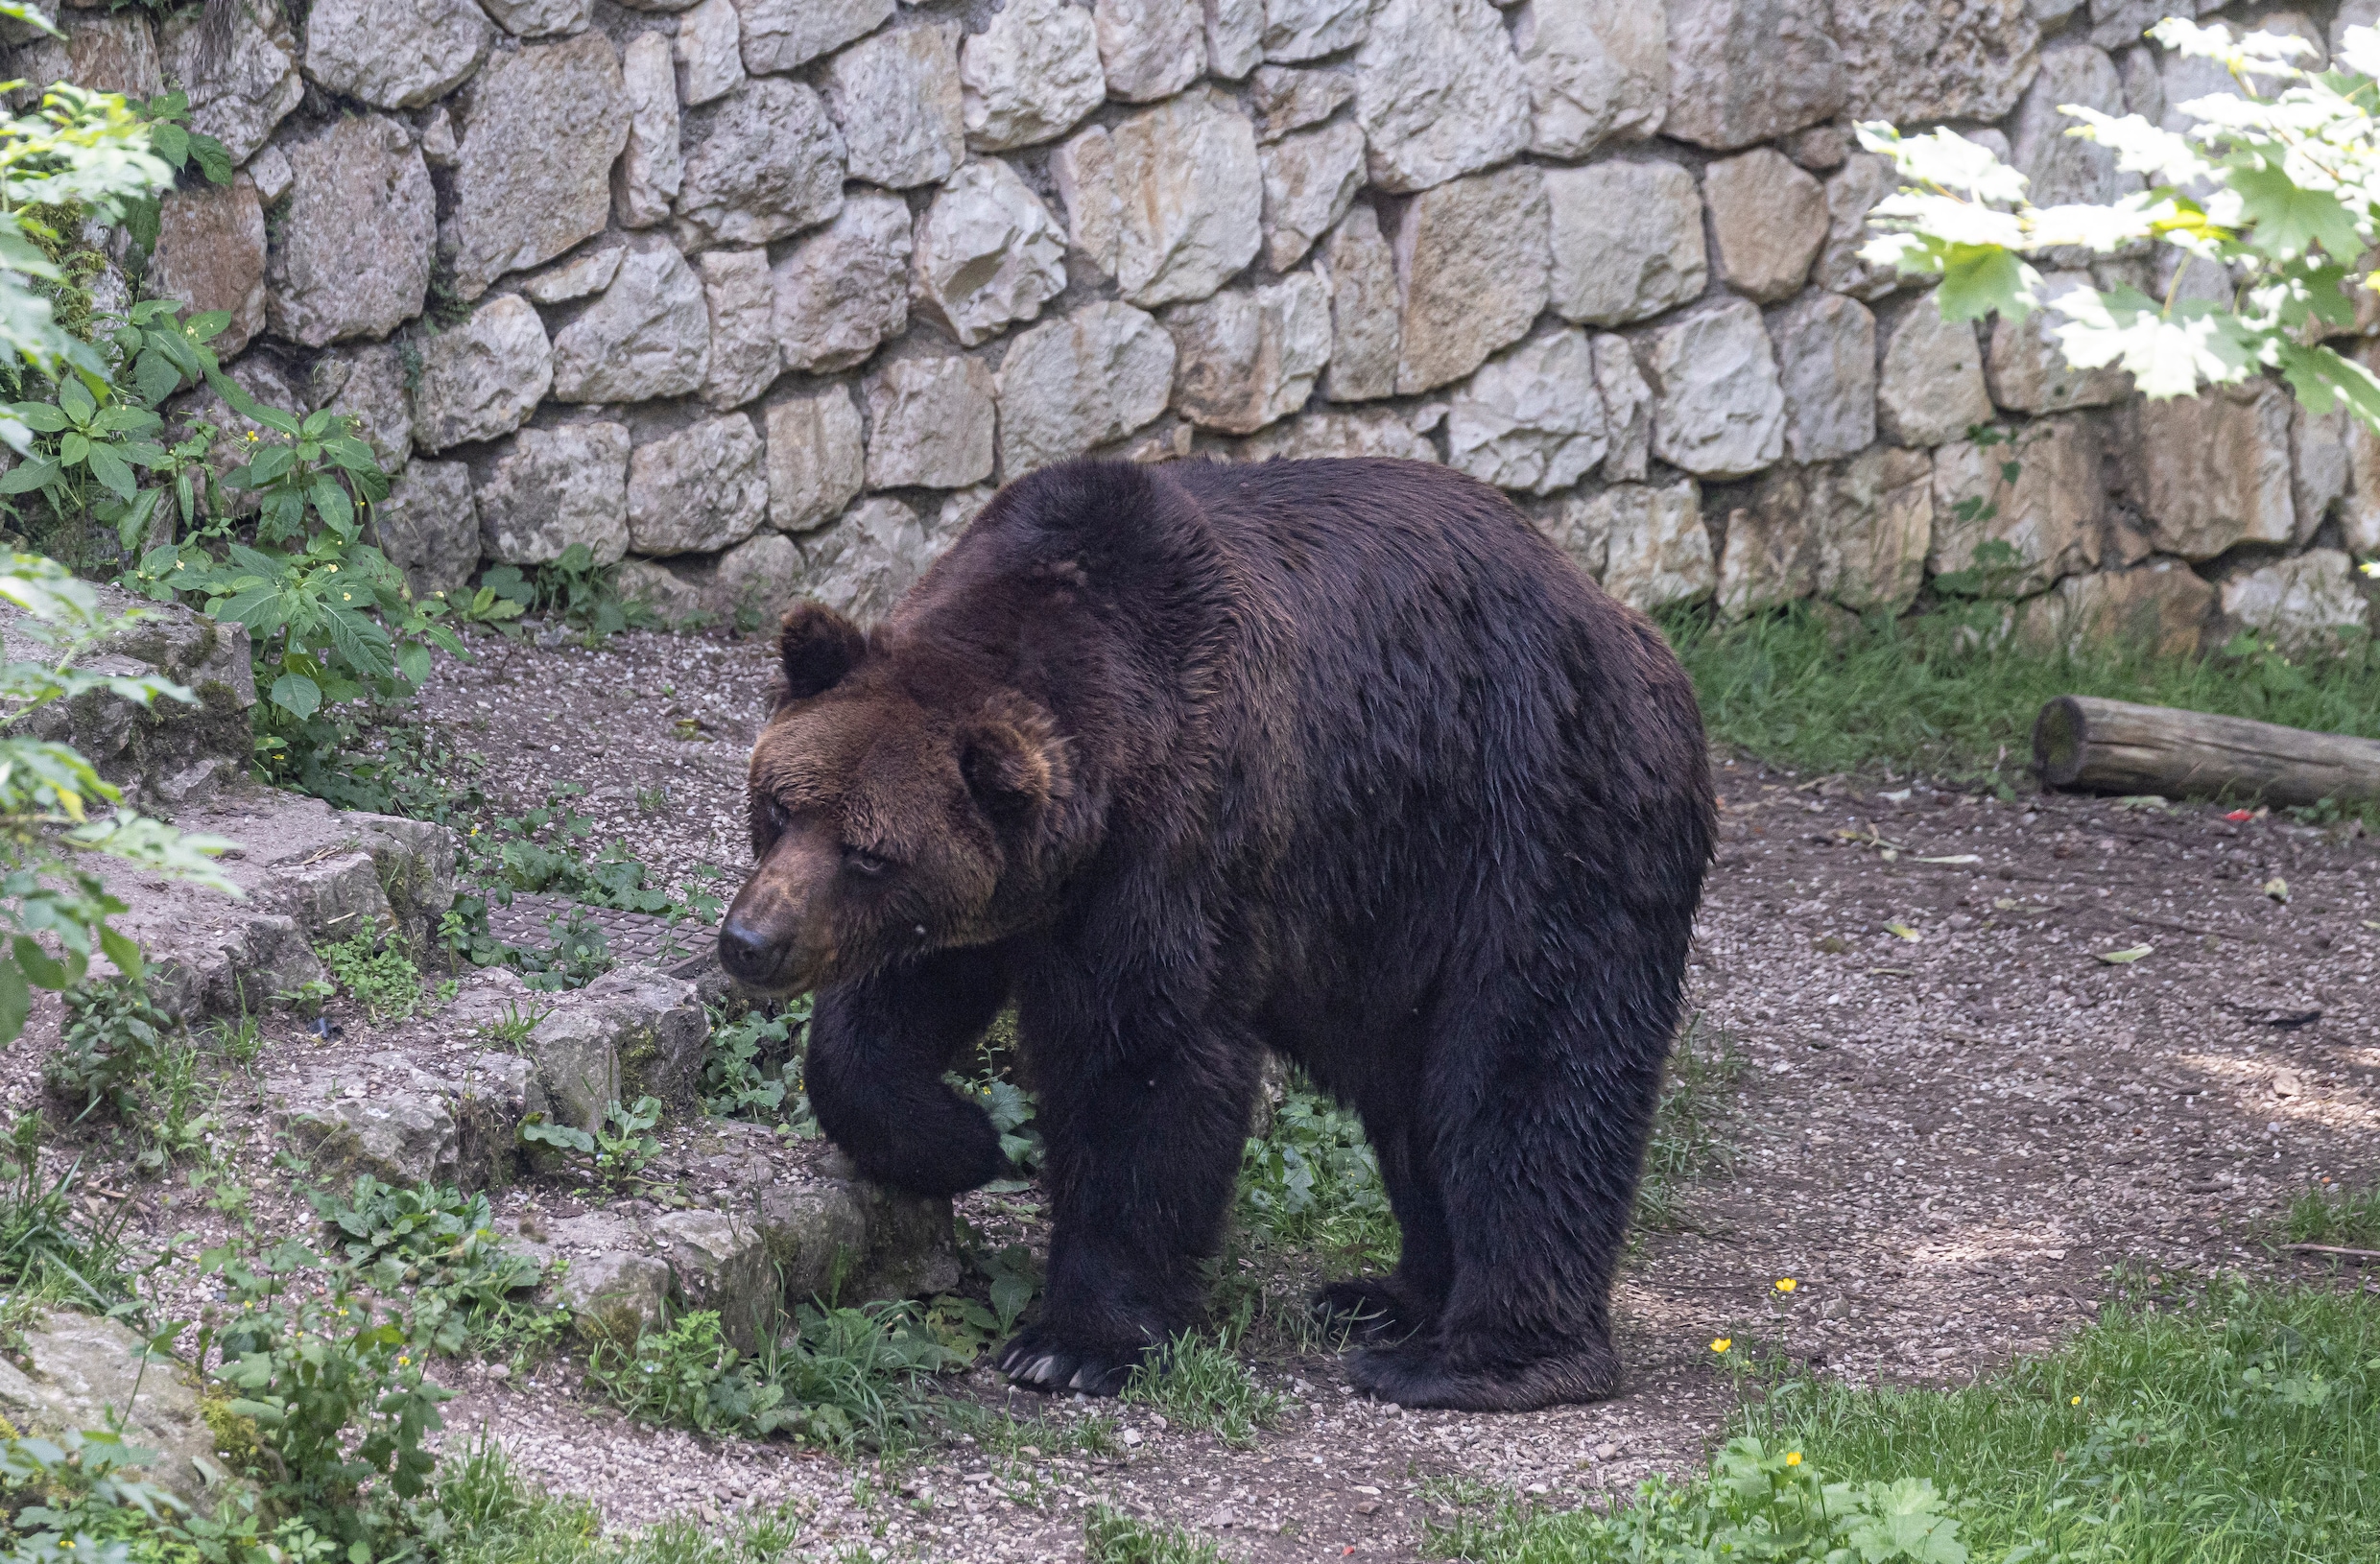 Noord-Italiaanse provincie wil komende jaren 24 beren afschieten, om ‘bevolking te beschermen’